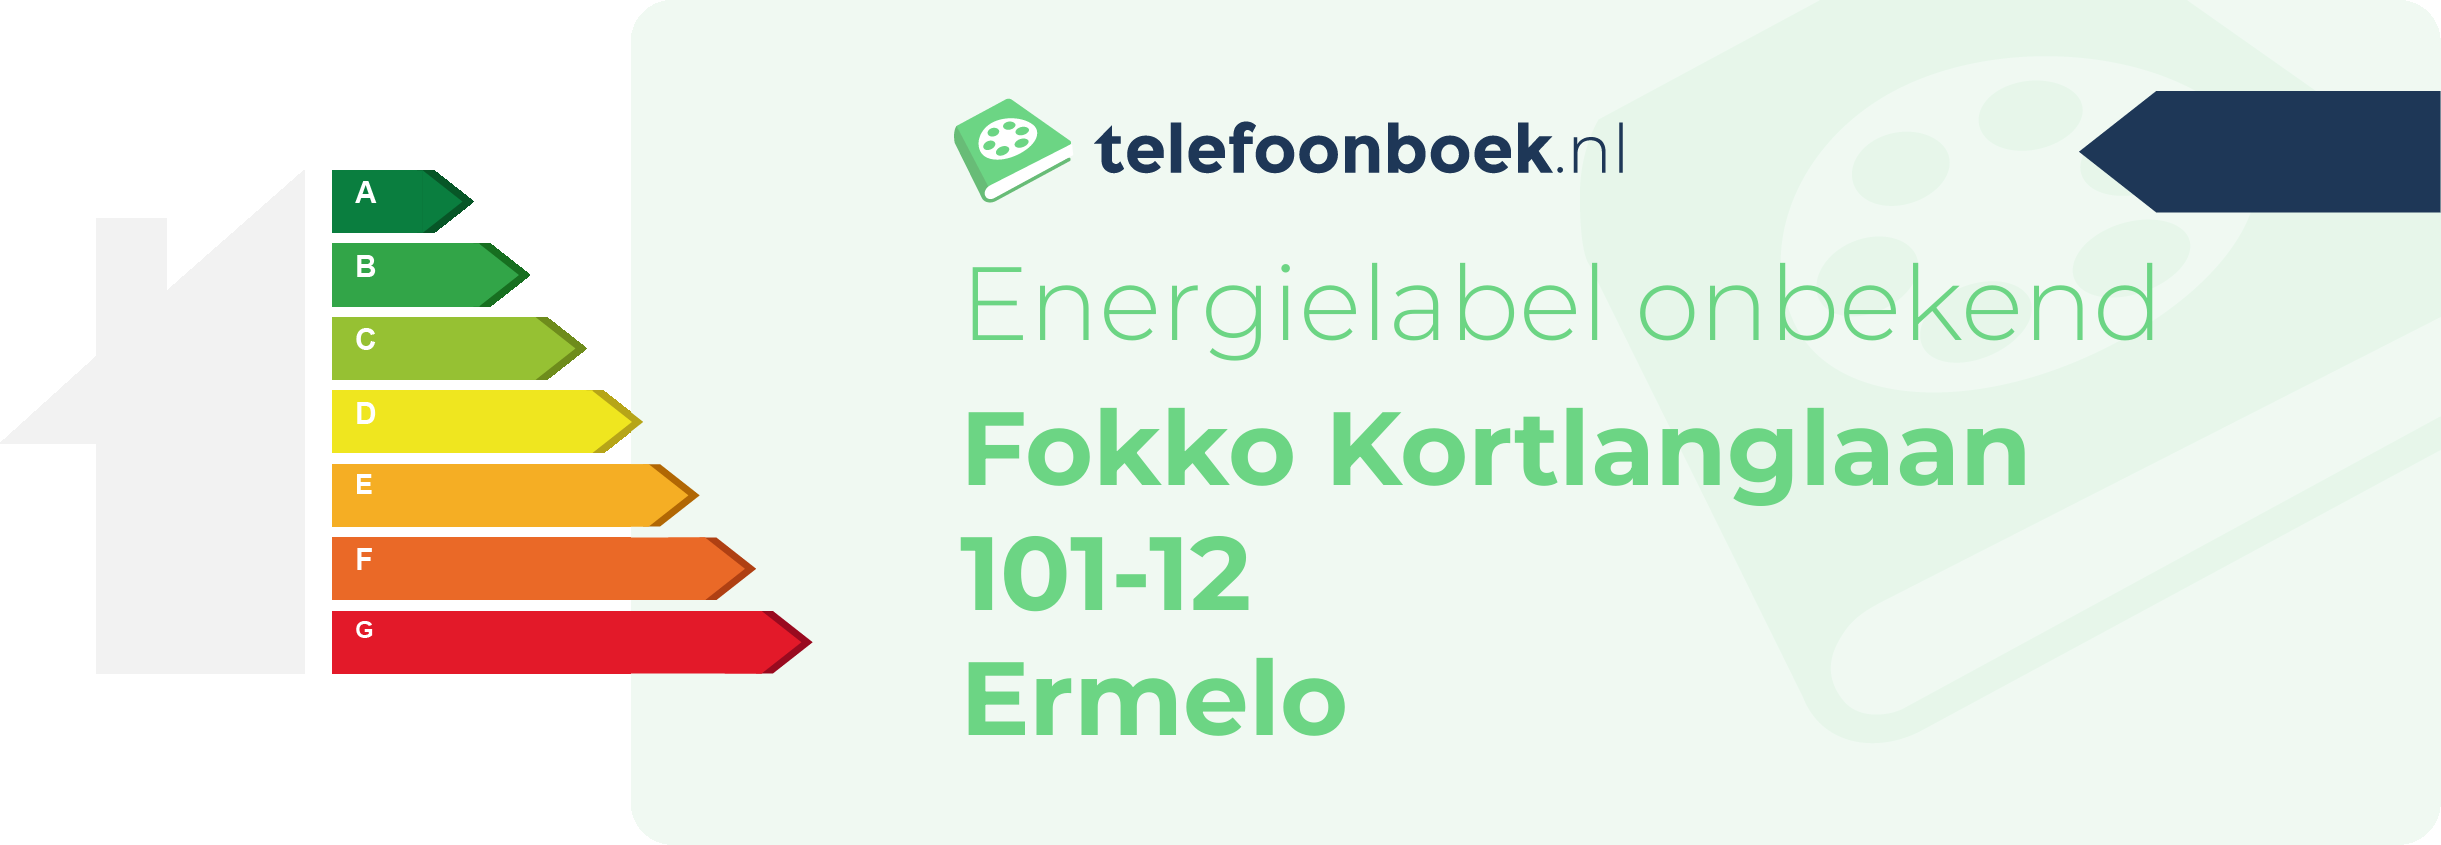 Energielabel Fokko Kortlanglaan 101-12 Ermelo